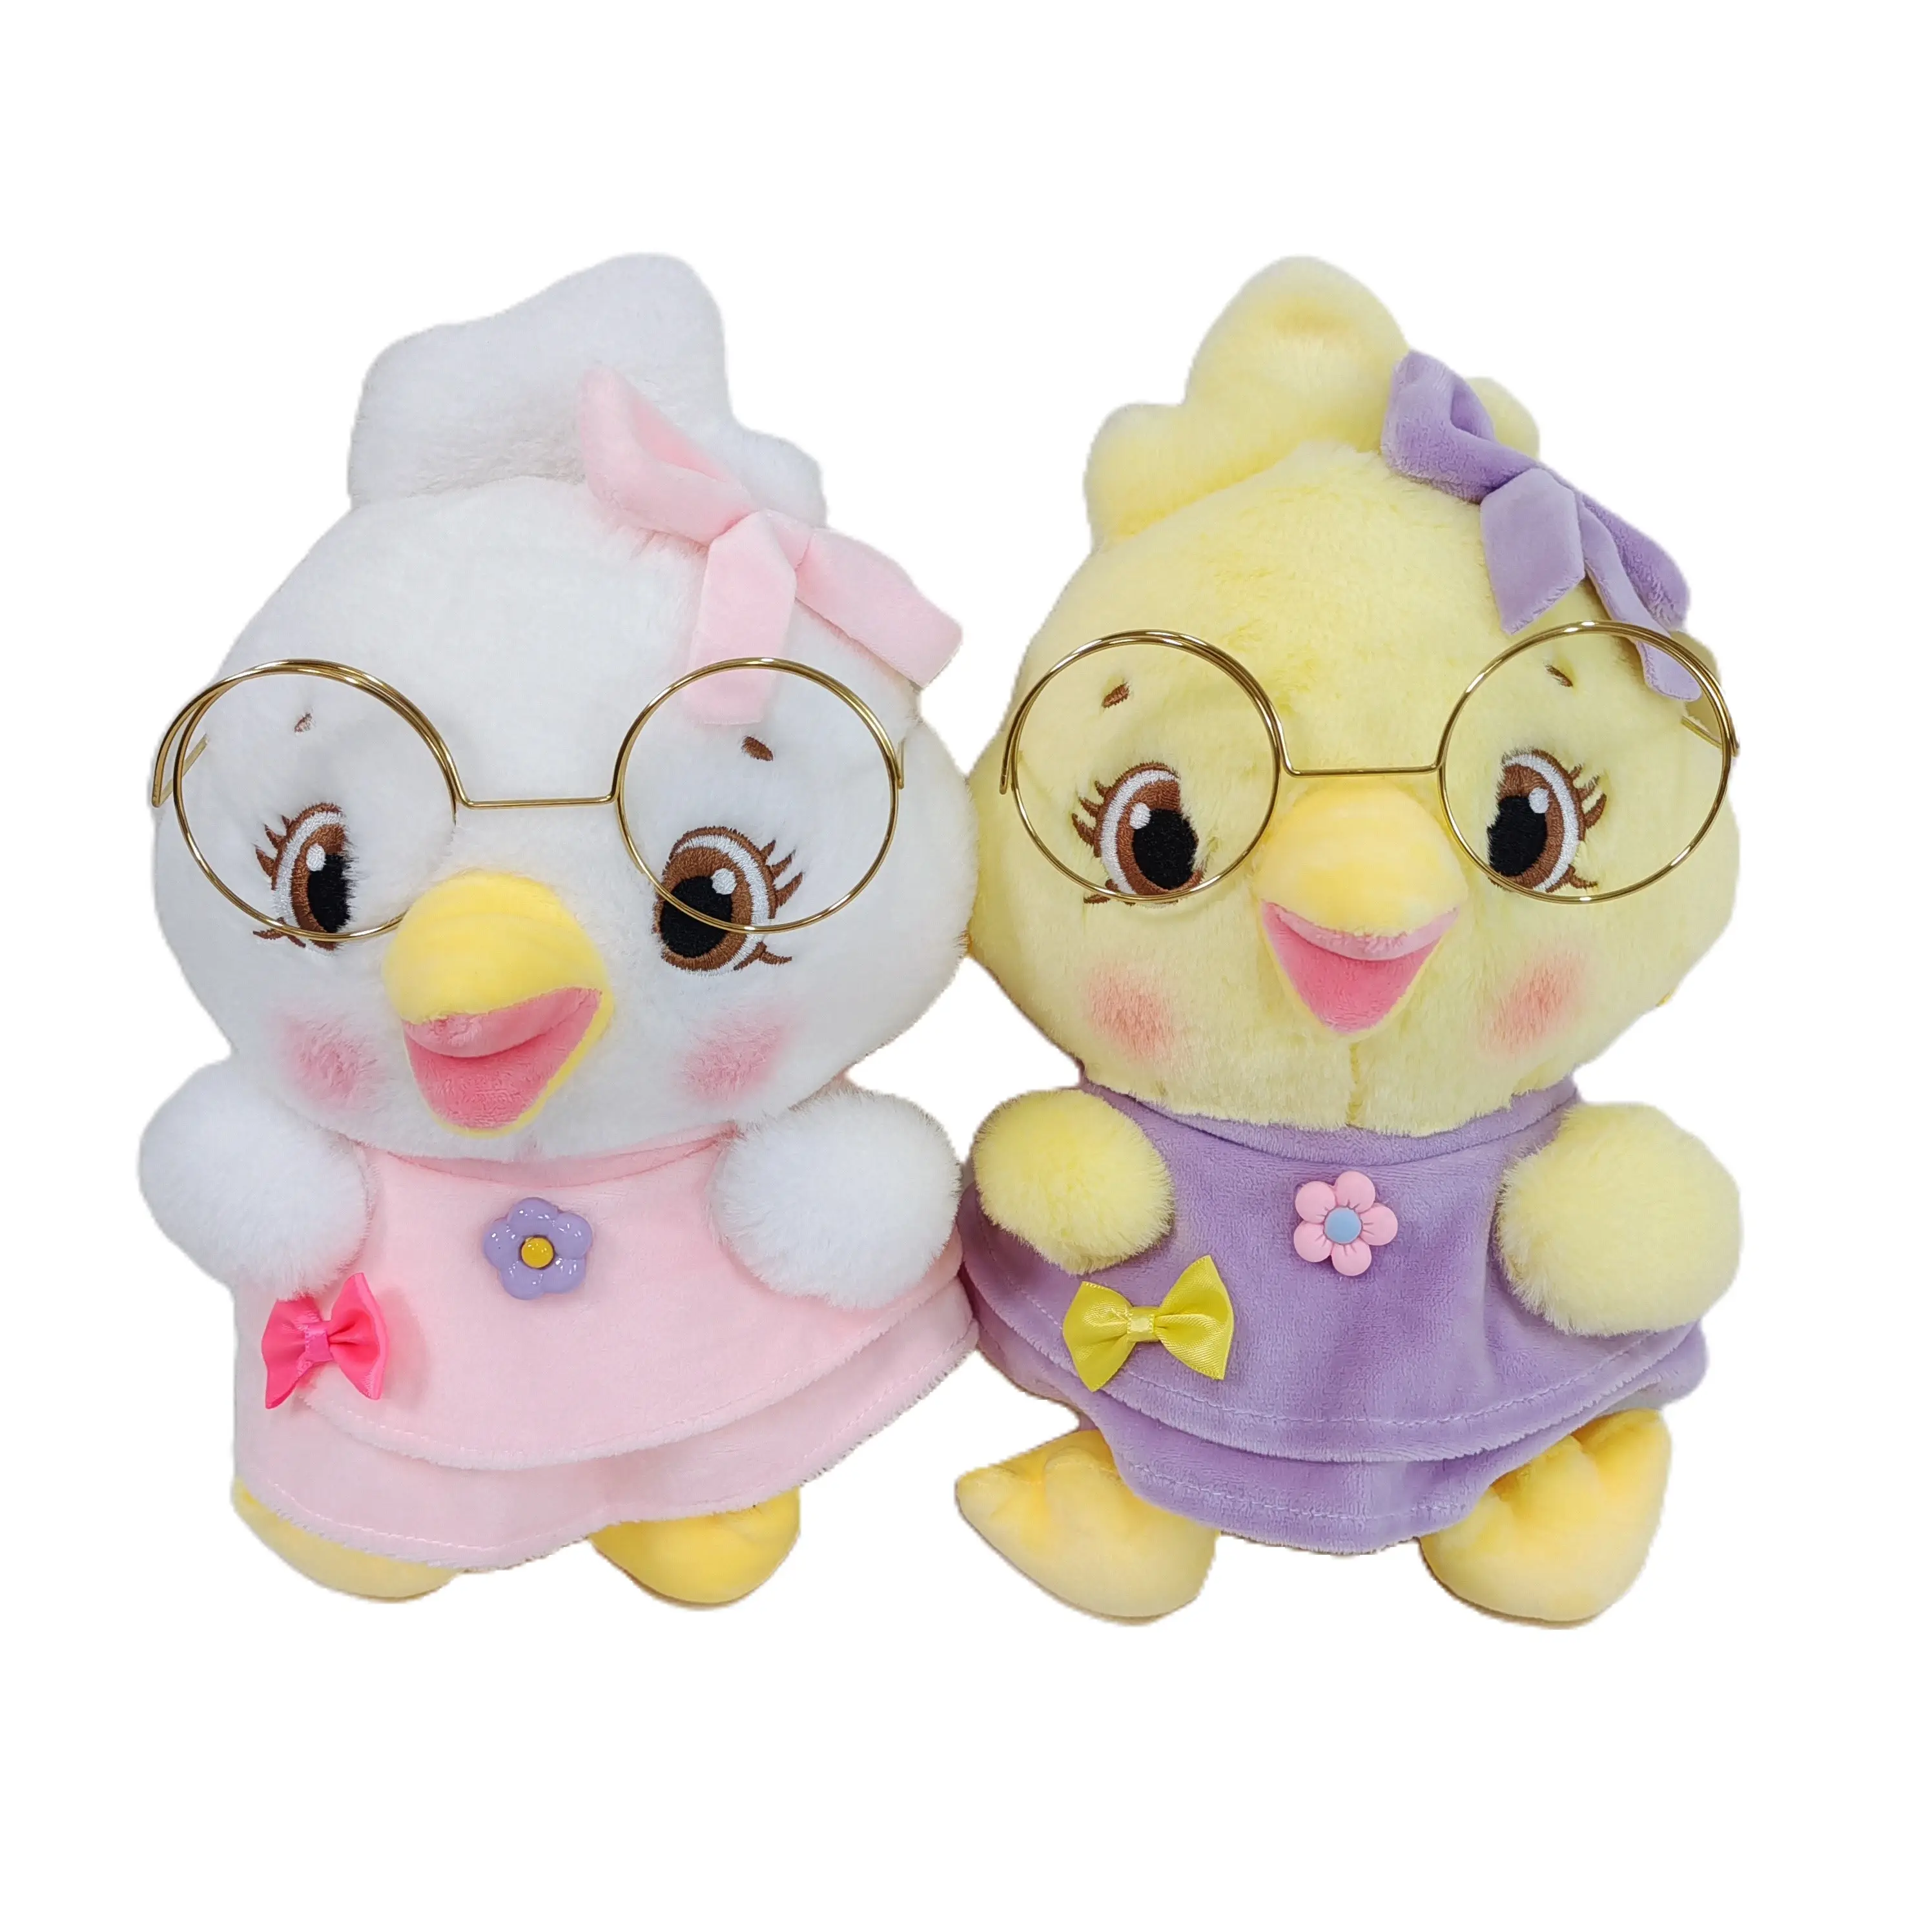 ODE/OEM creativo lindo personalización 20 cm gafas pollo juguetes de peluche